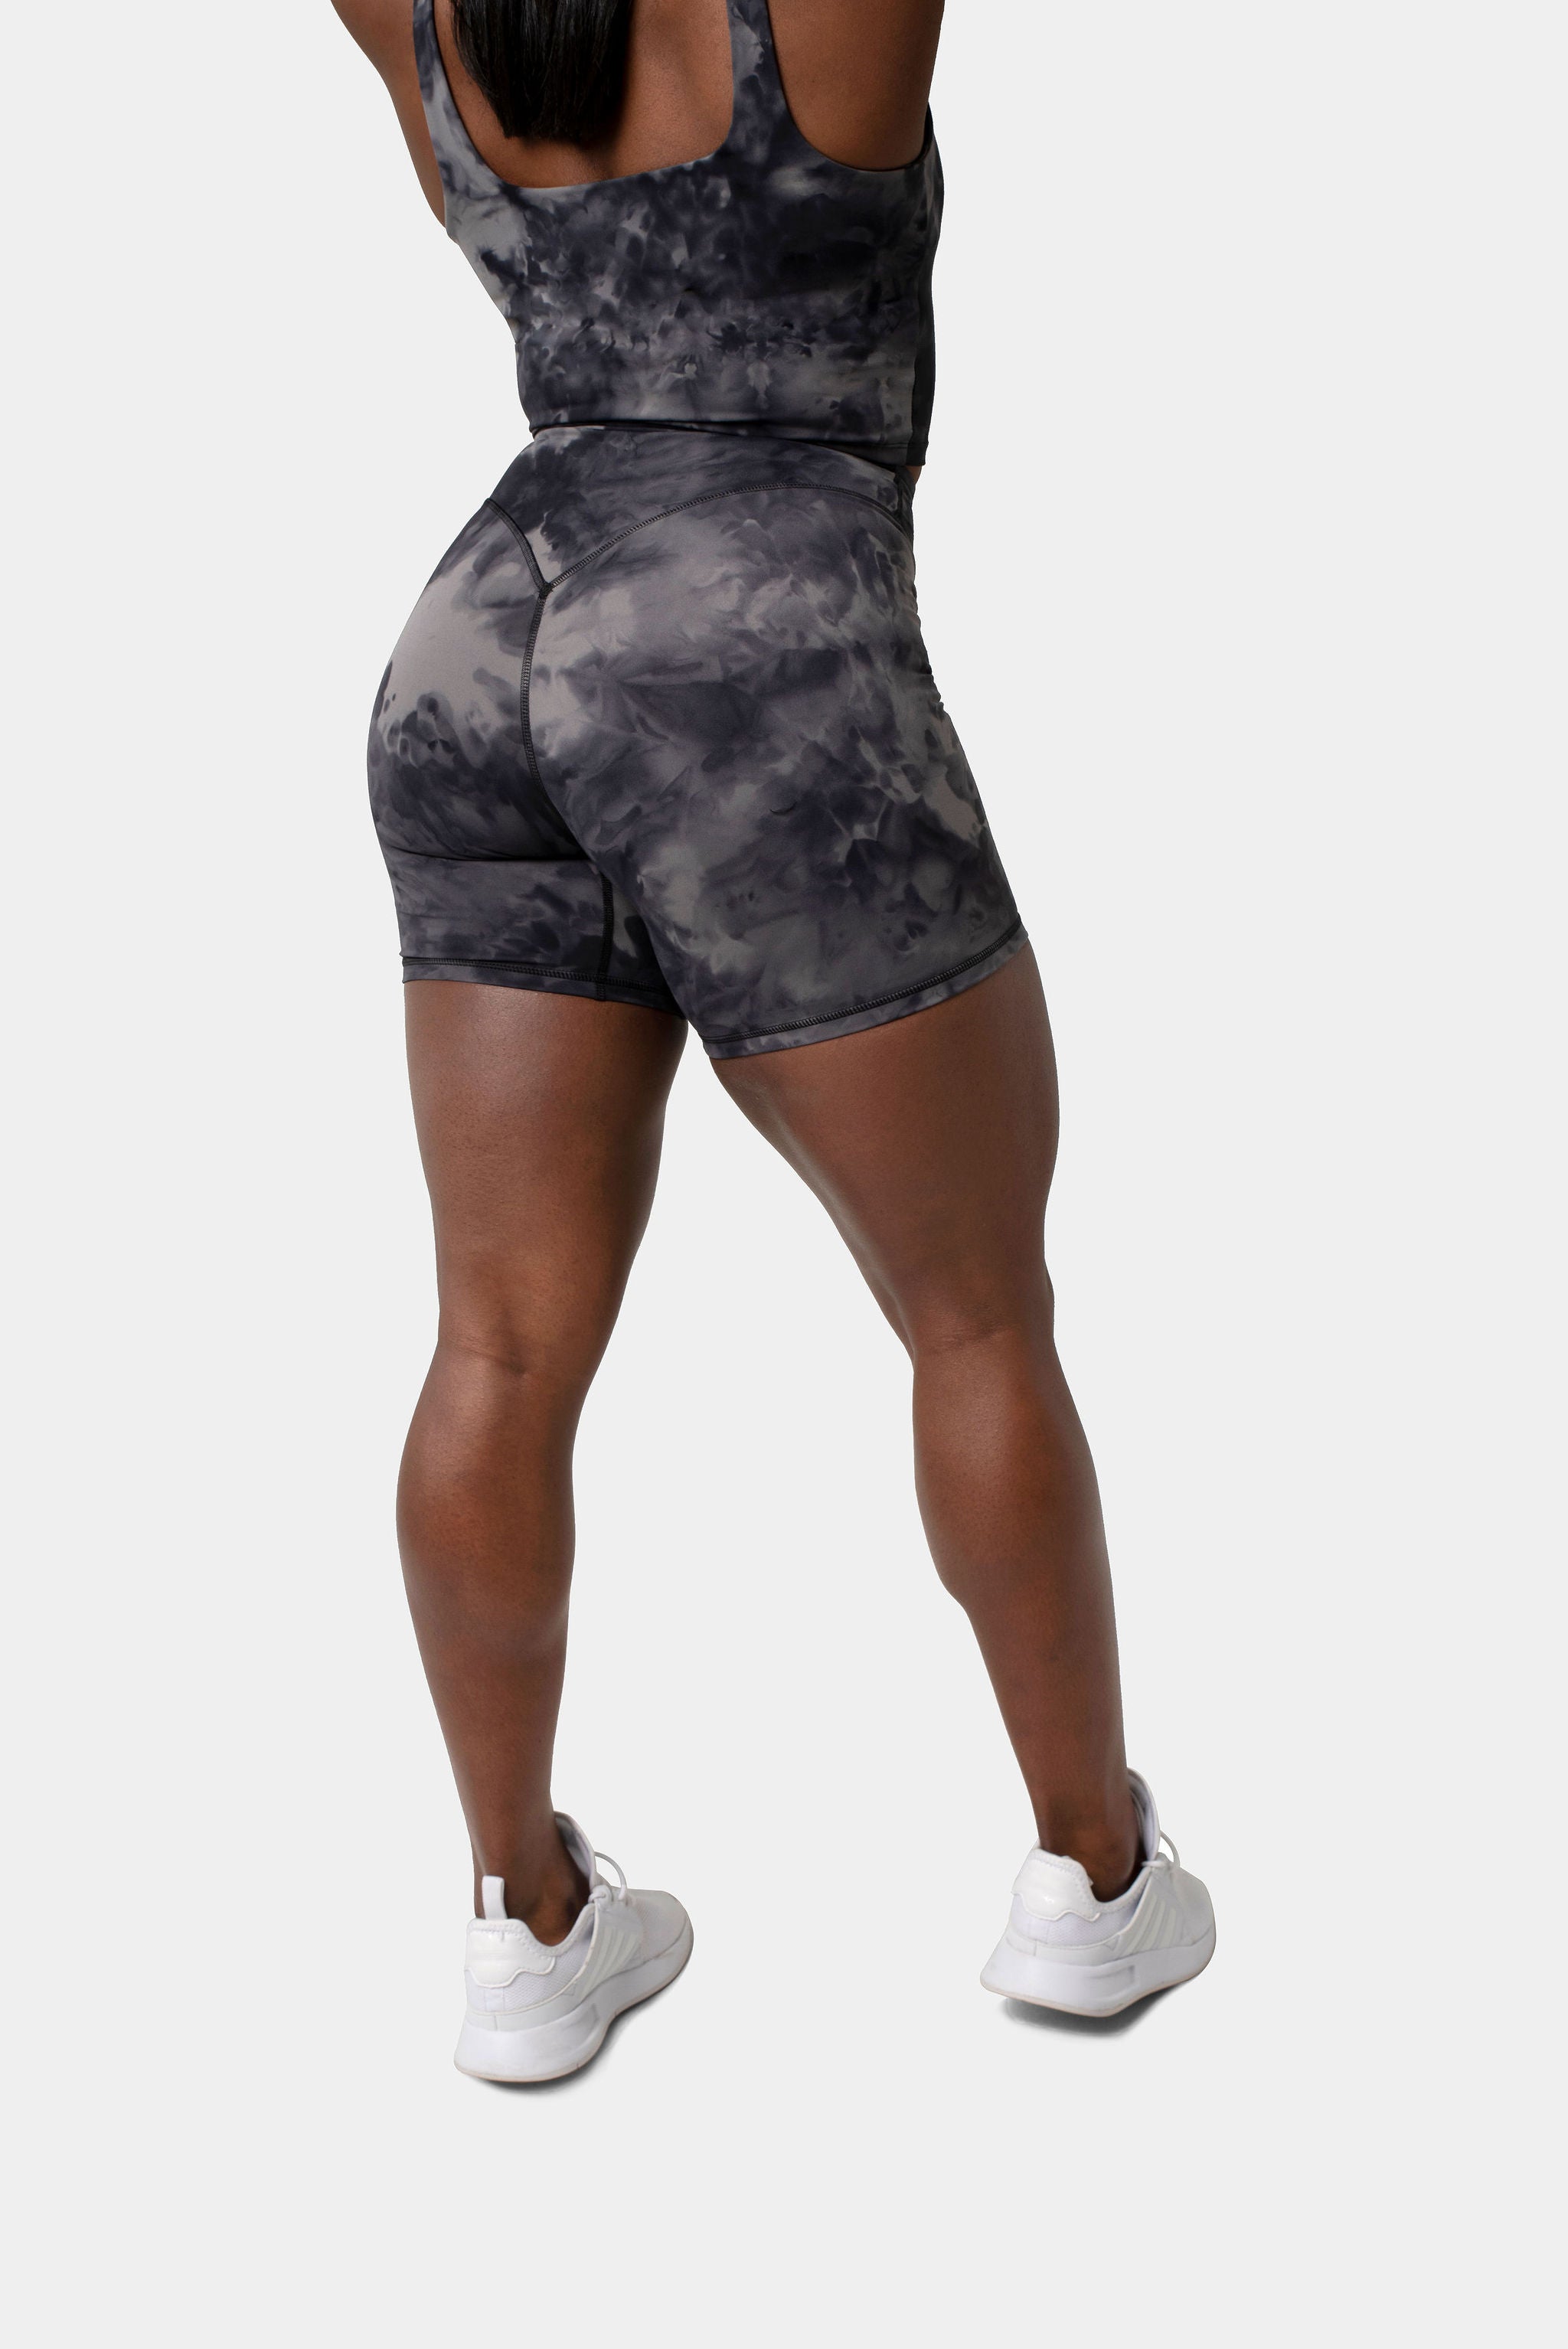 Kamo Fitness Ellyn Tank Top Crop Sports Bra for Women Soft Padded